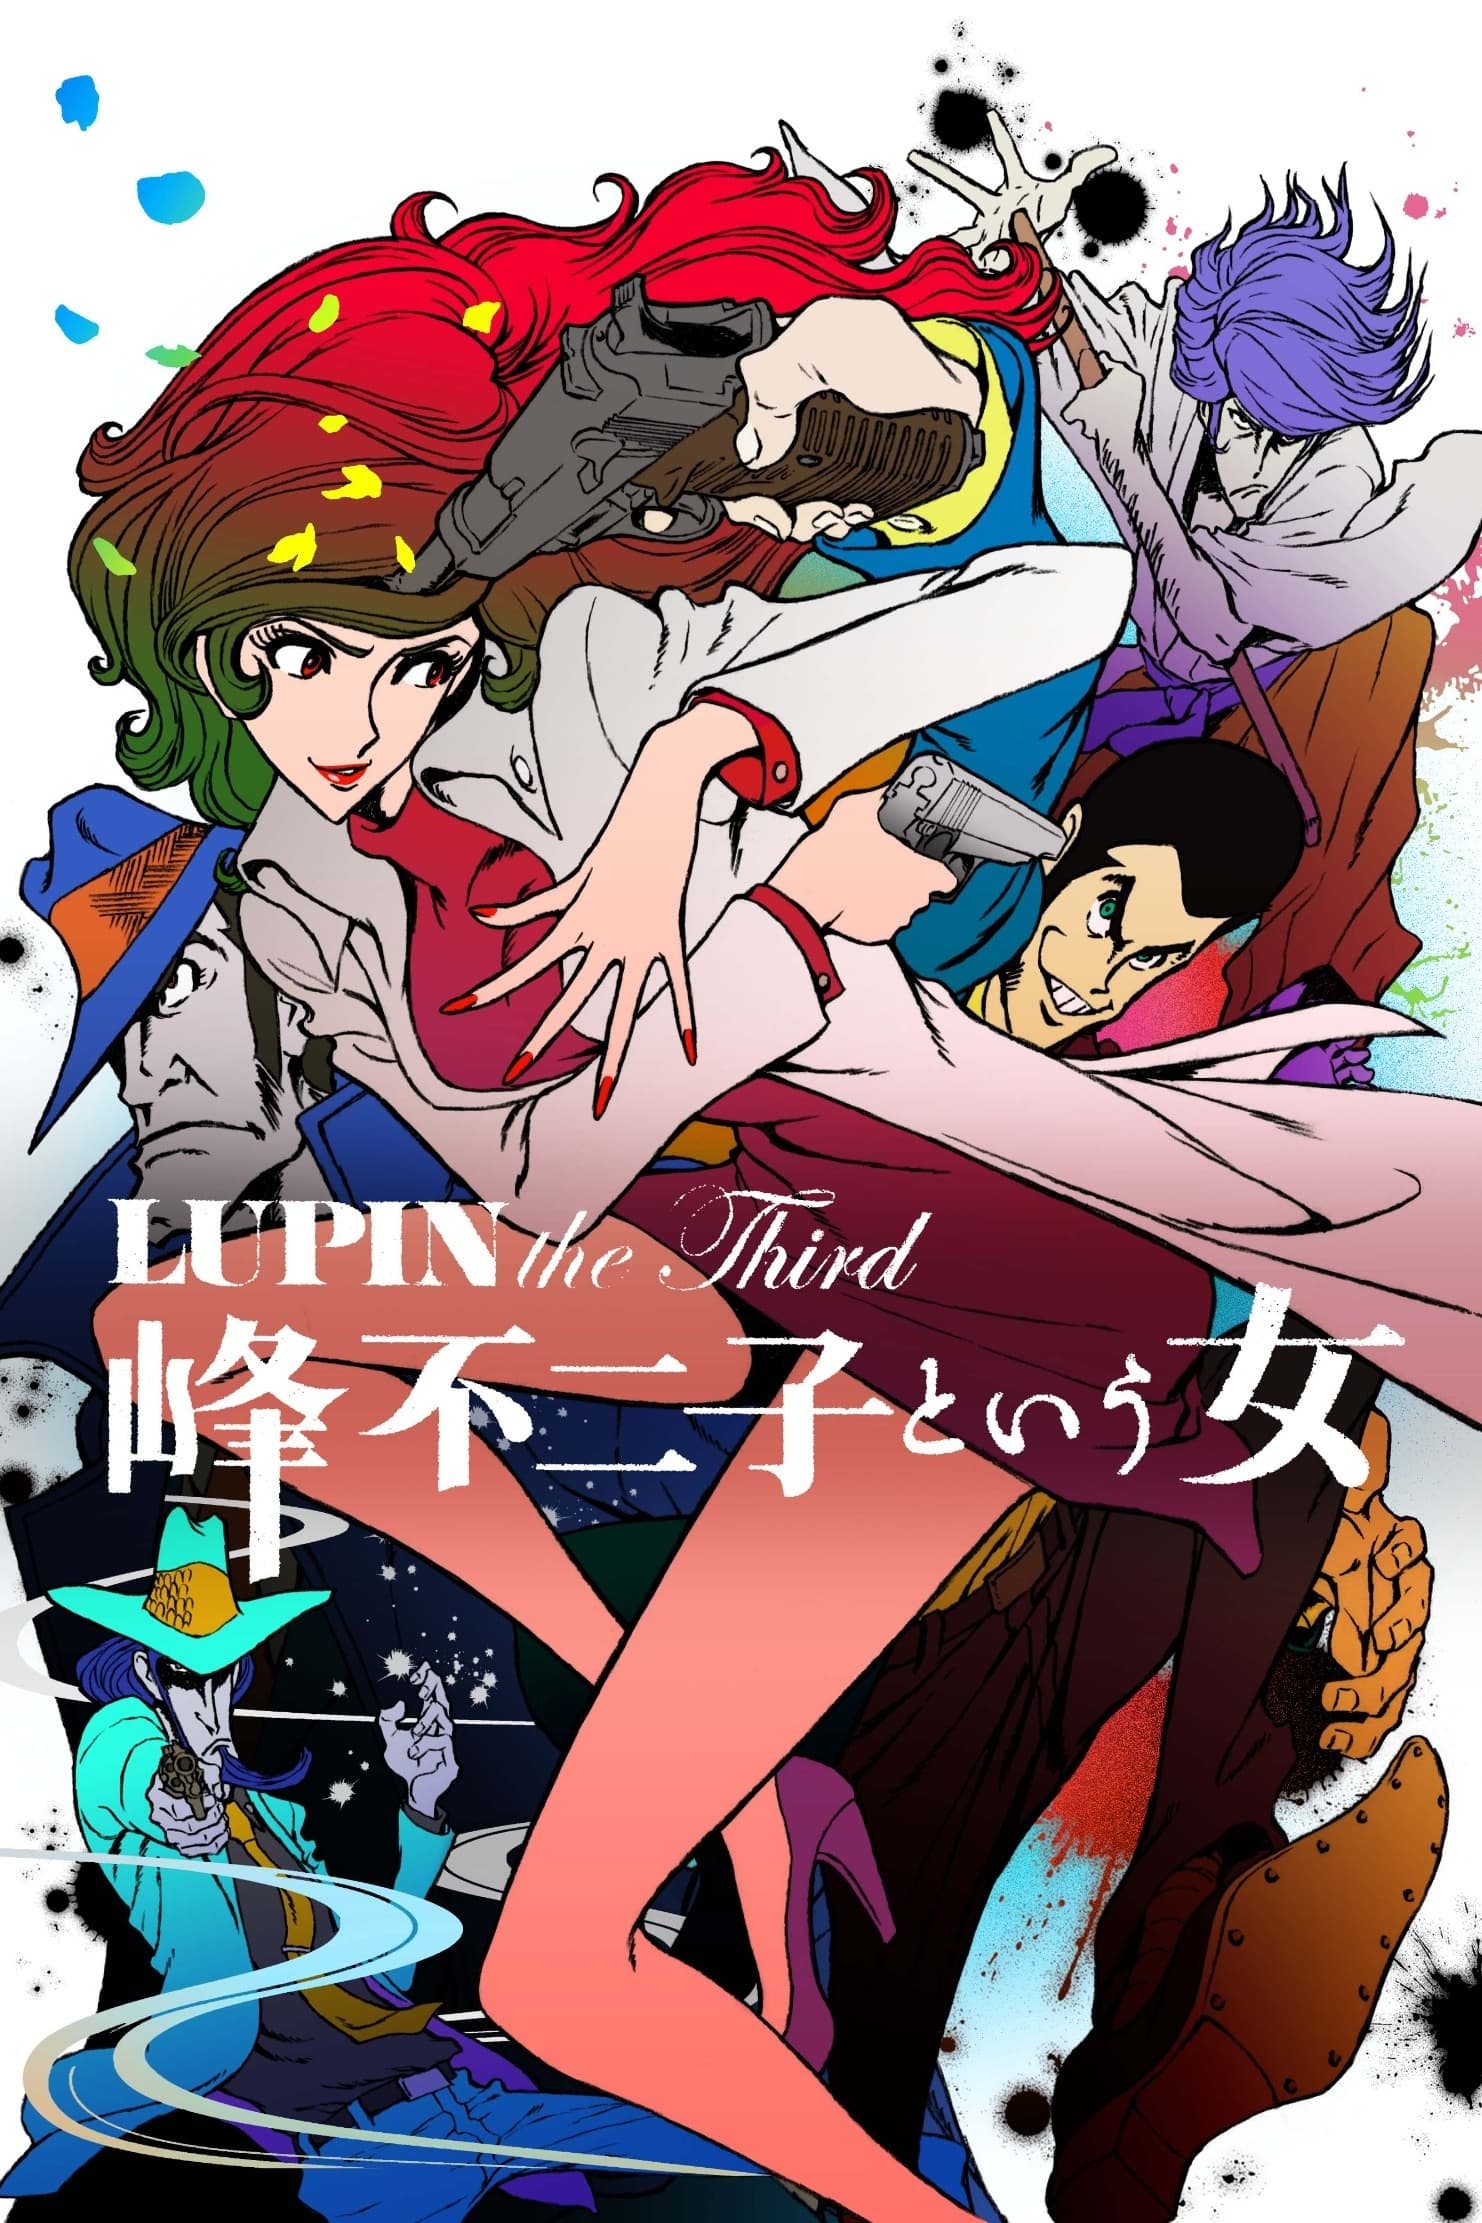 Original Lupin III Anime Poster